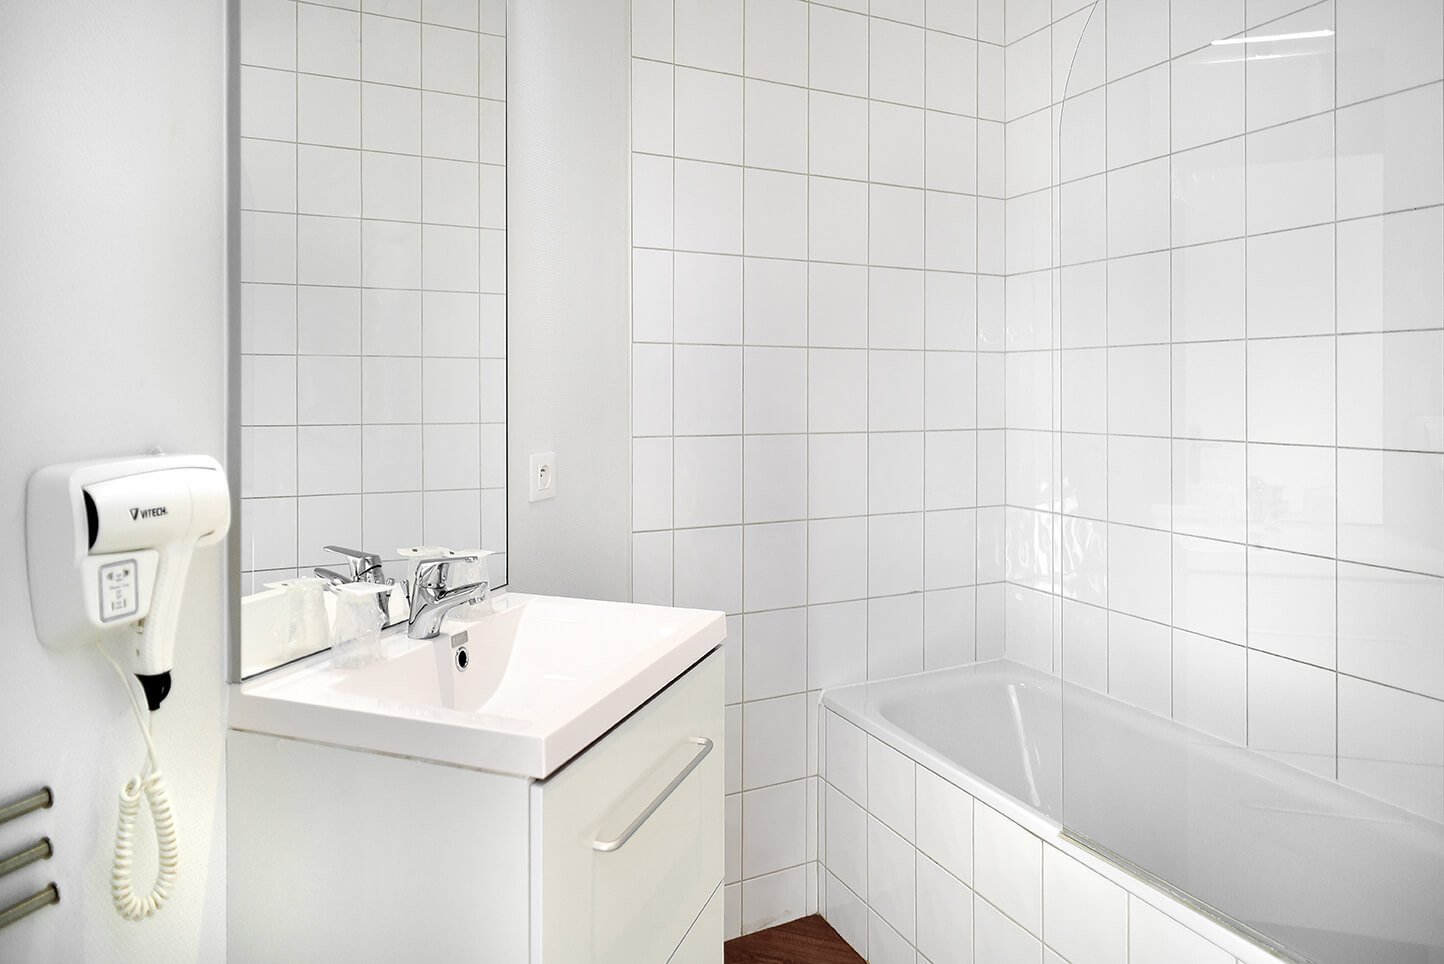 Une salle de bain avec la baignoire sur la droite et le meuble vasque sur la gauche. Au premier plan à gauche, un sèche-cheveux 